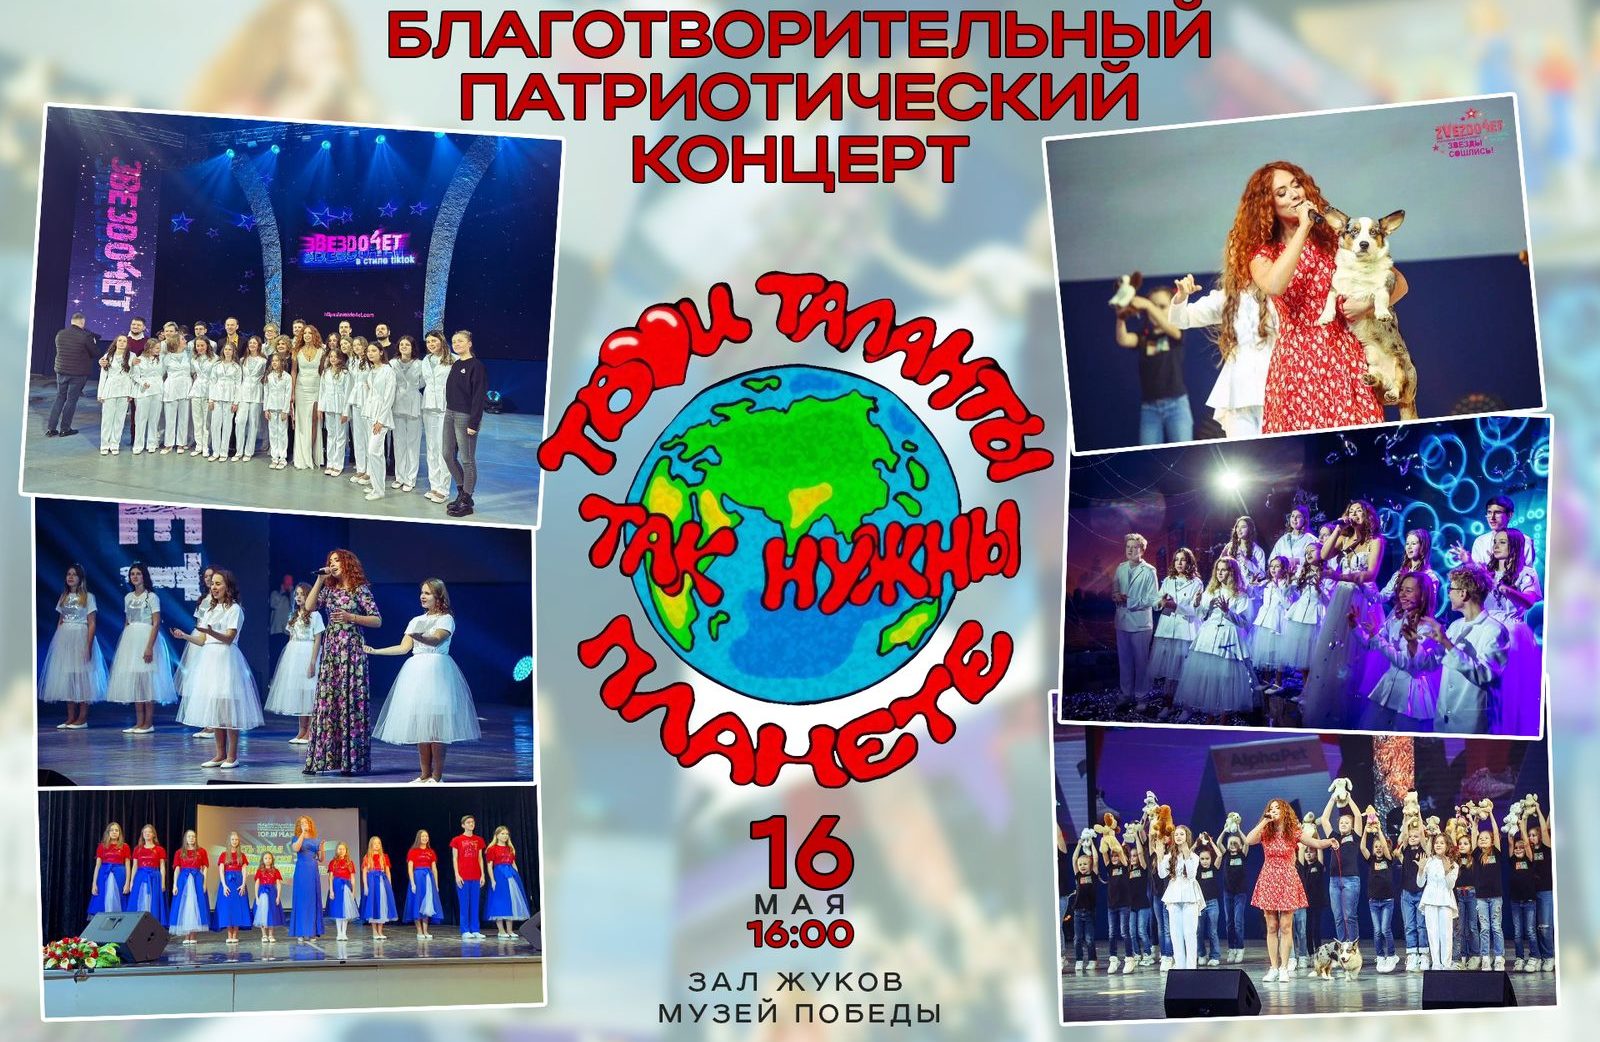 Артисты вместе с детьми исполнят российские и белорусские хиты